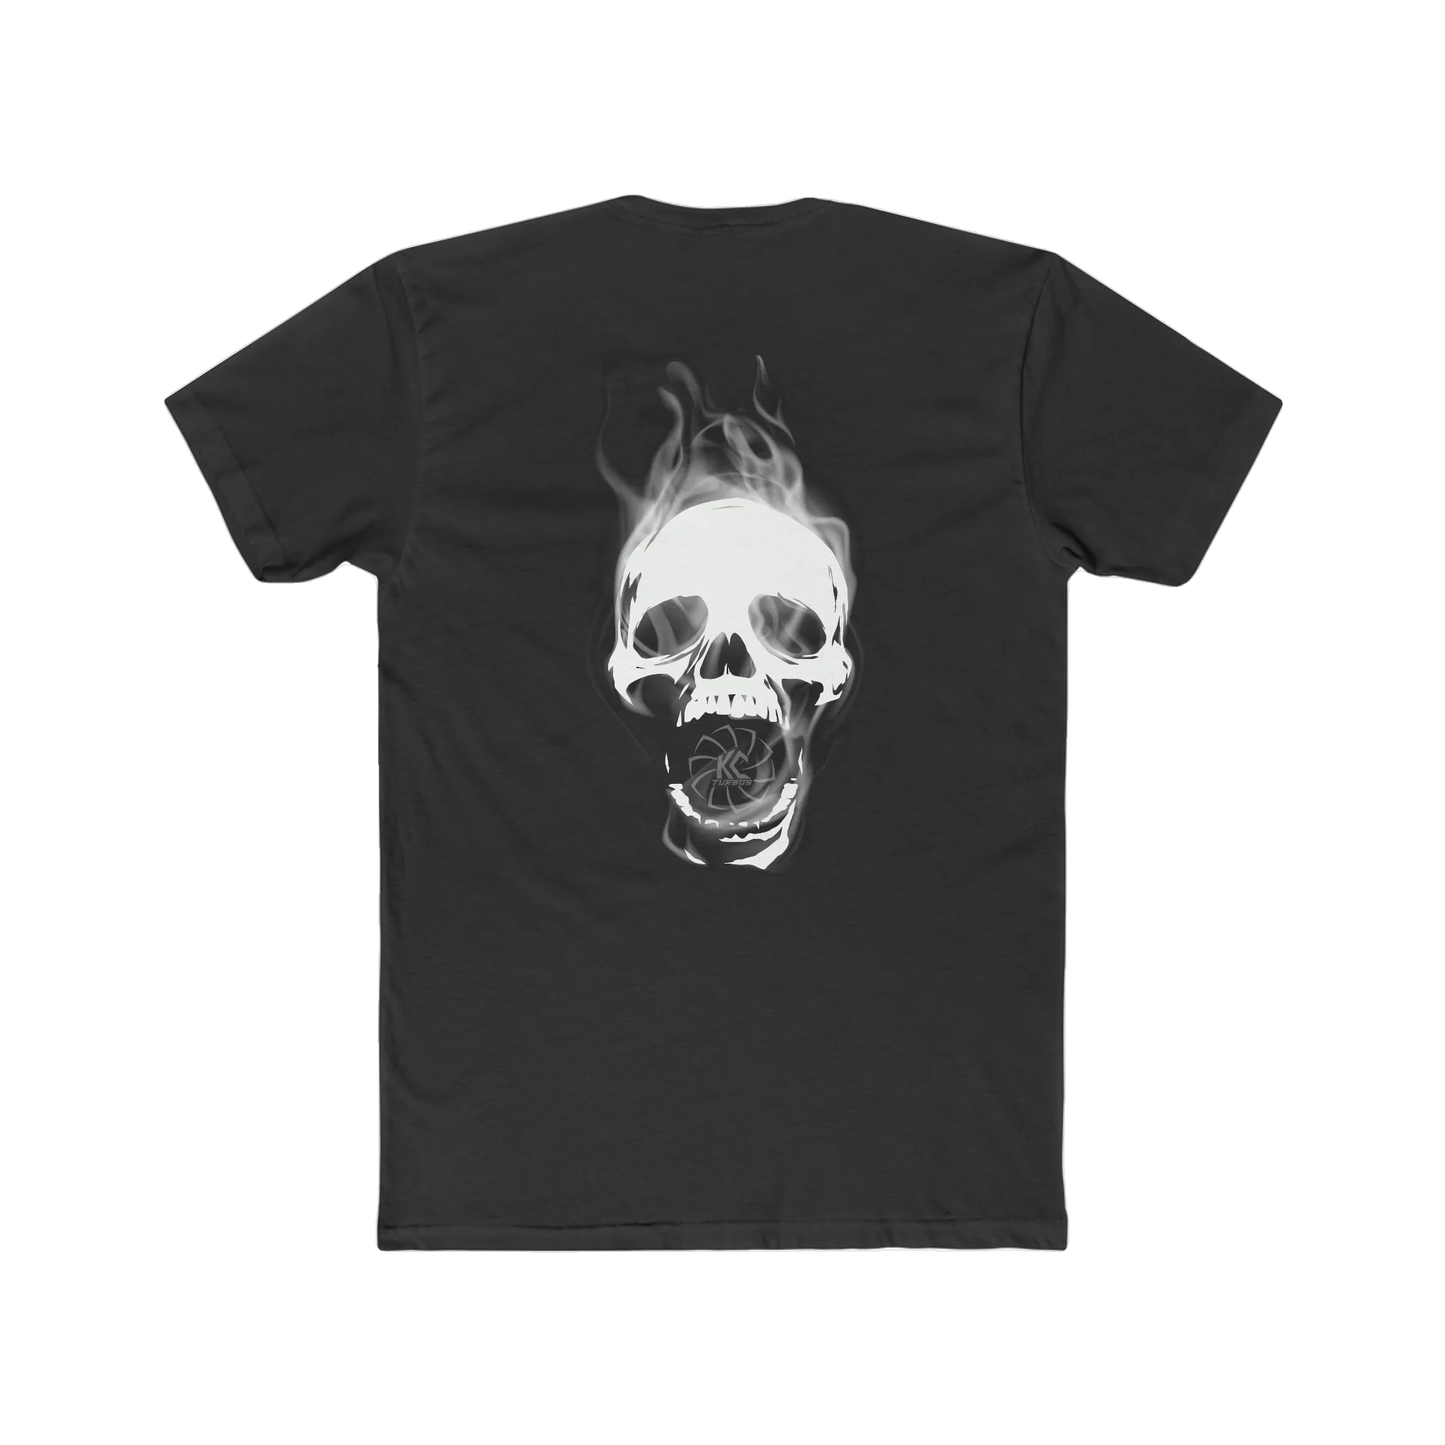 Diesel Til You Die (Back Side Graphic) - T-shirt